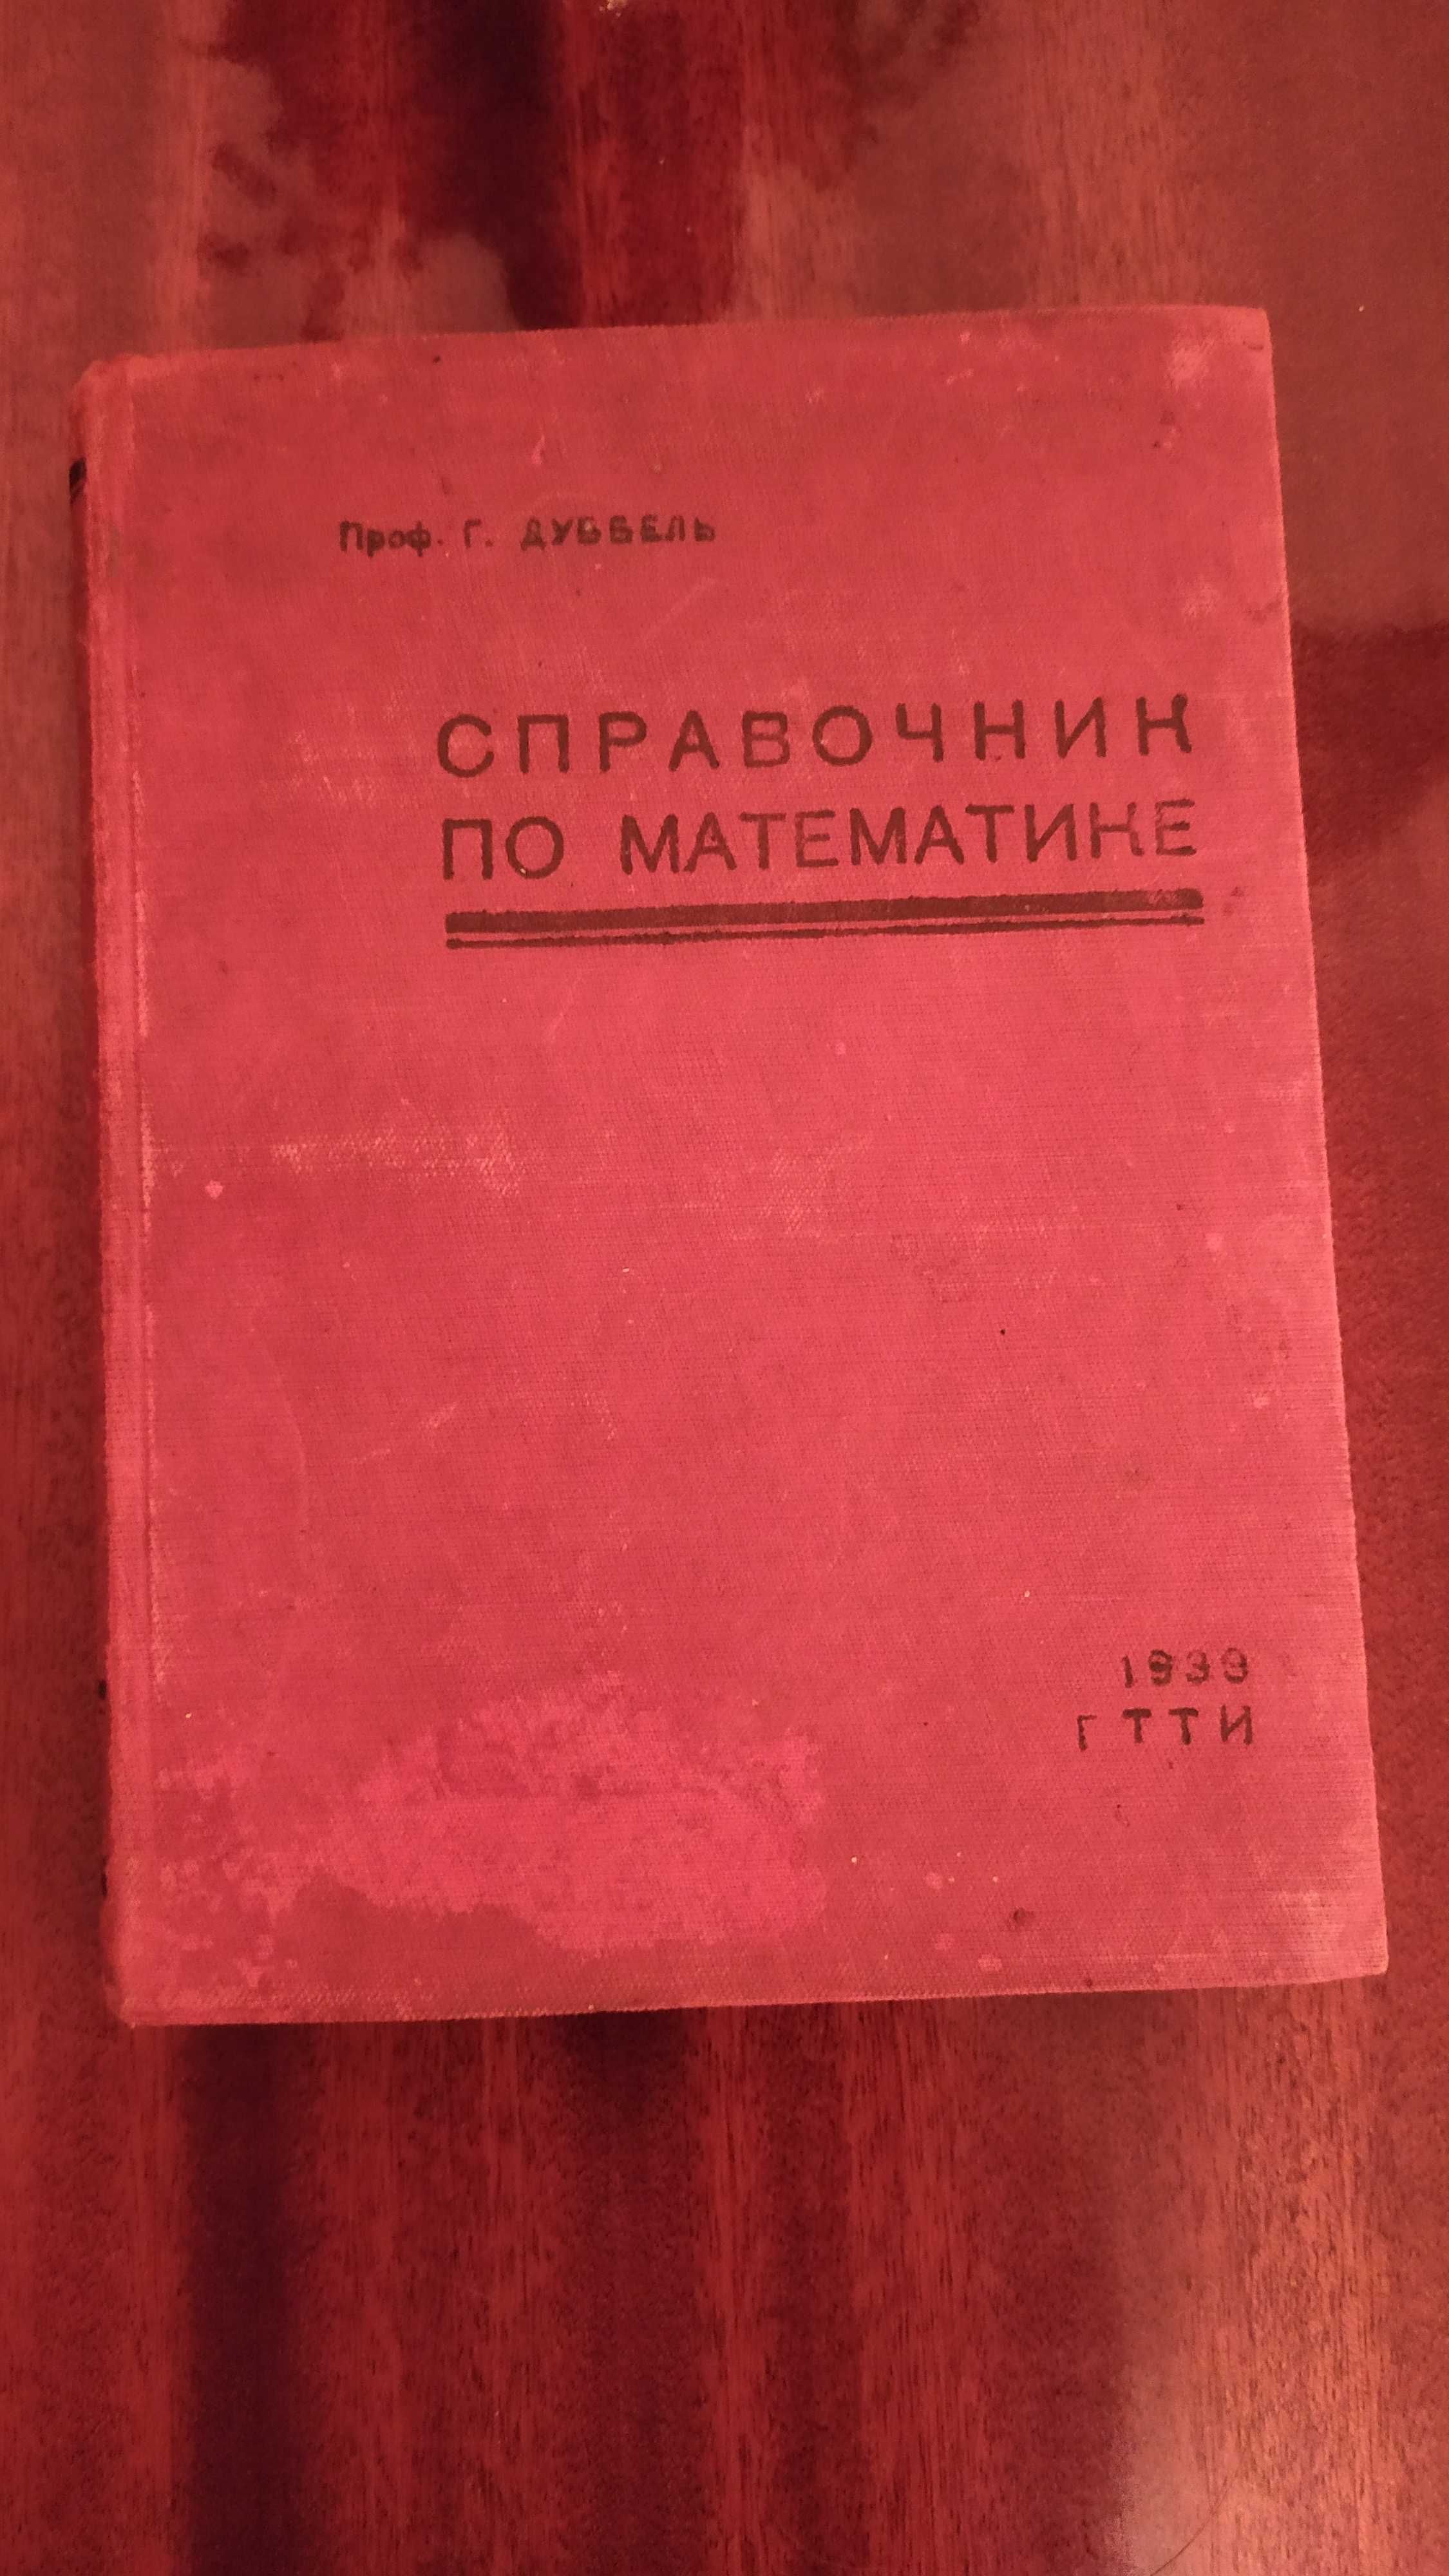 Продам справочник по математике (проф. В.Г. Дуббель), 1933 год